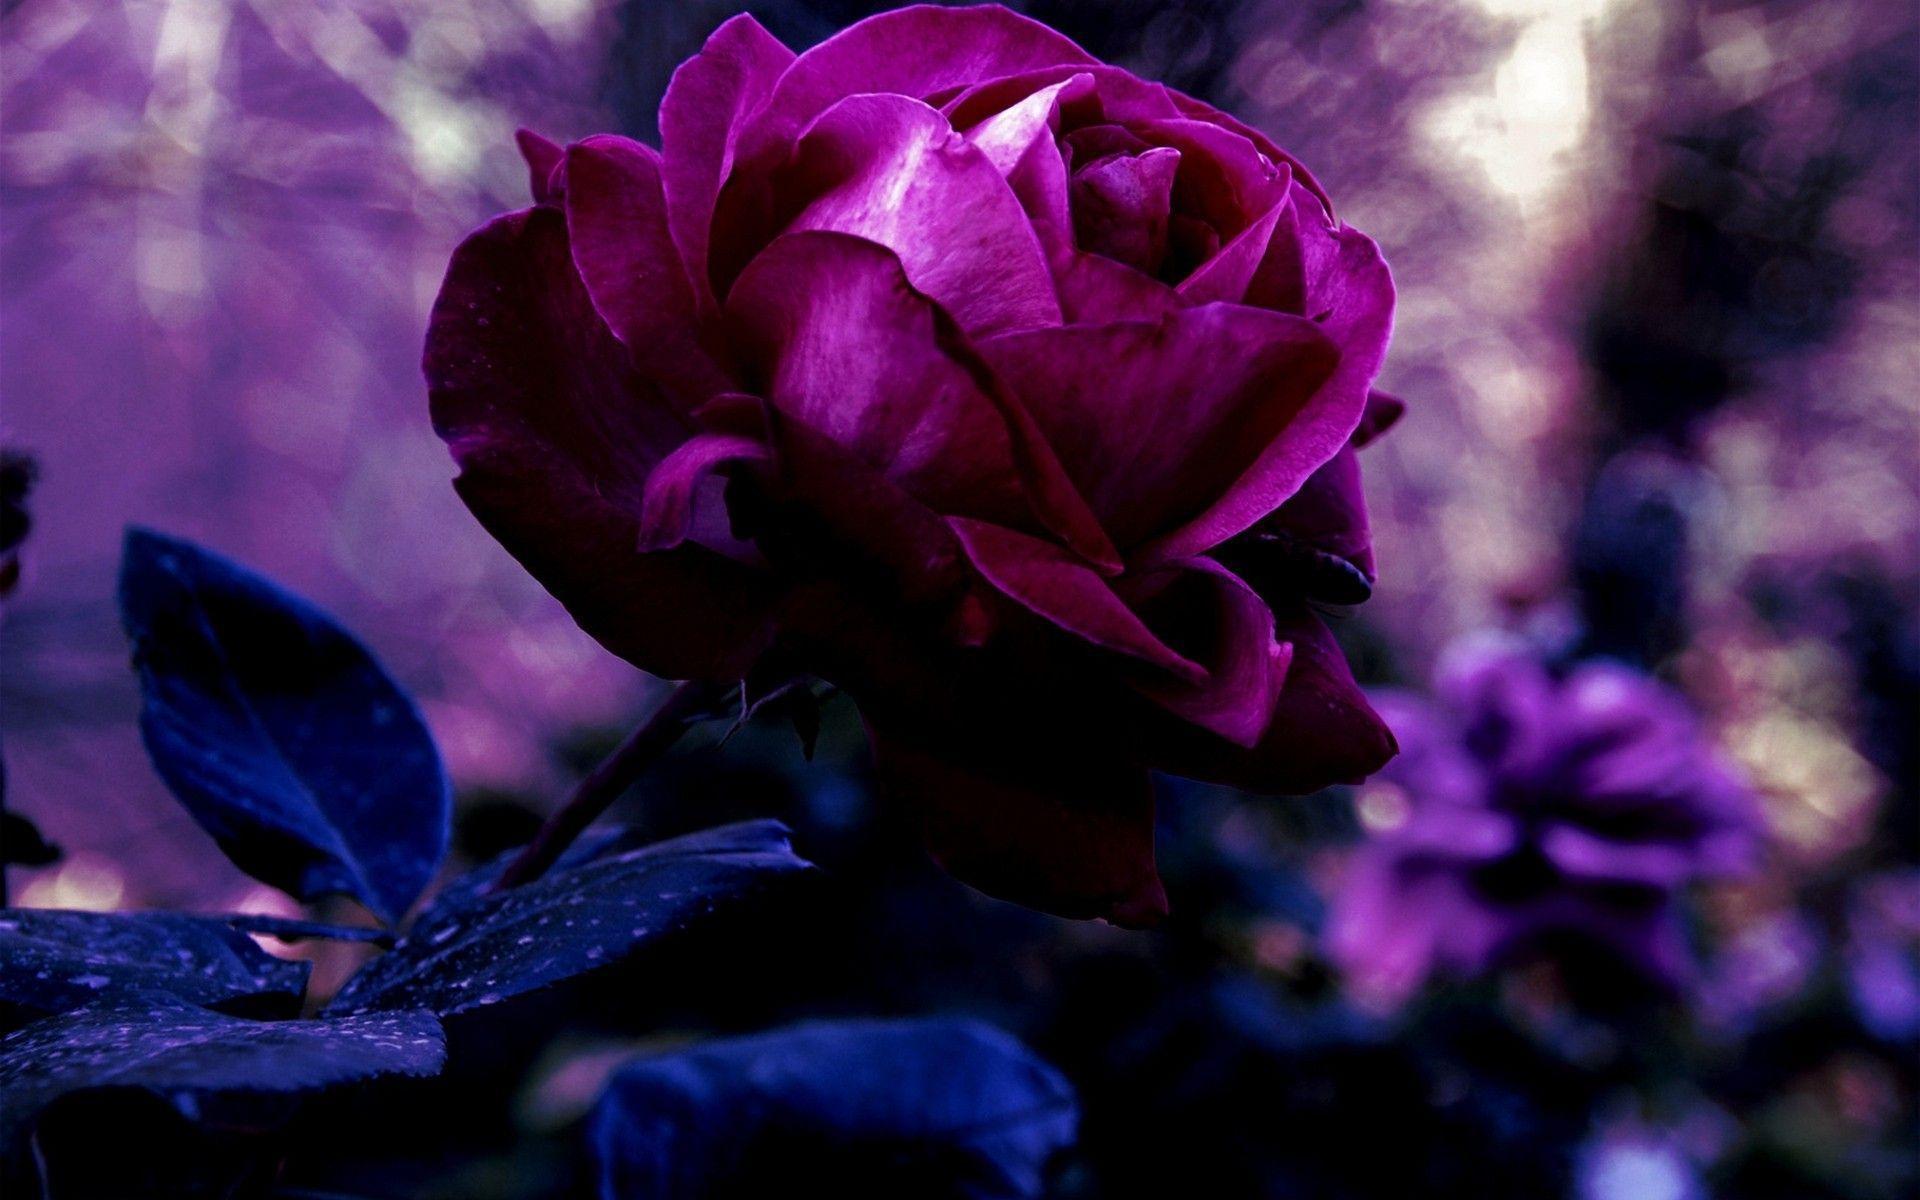 Dark, Black roses and Roses